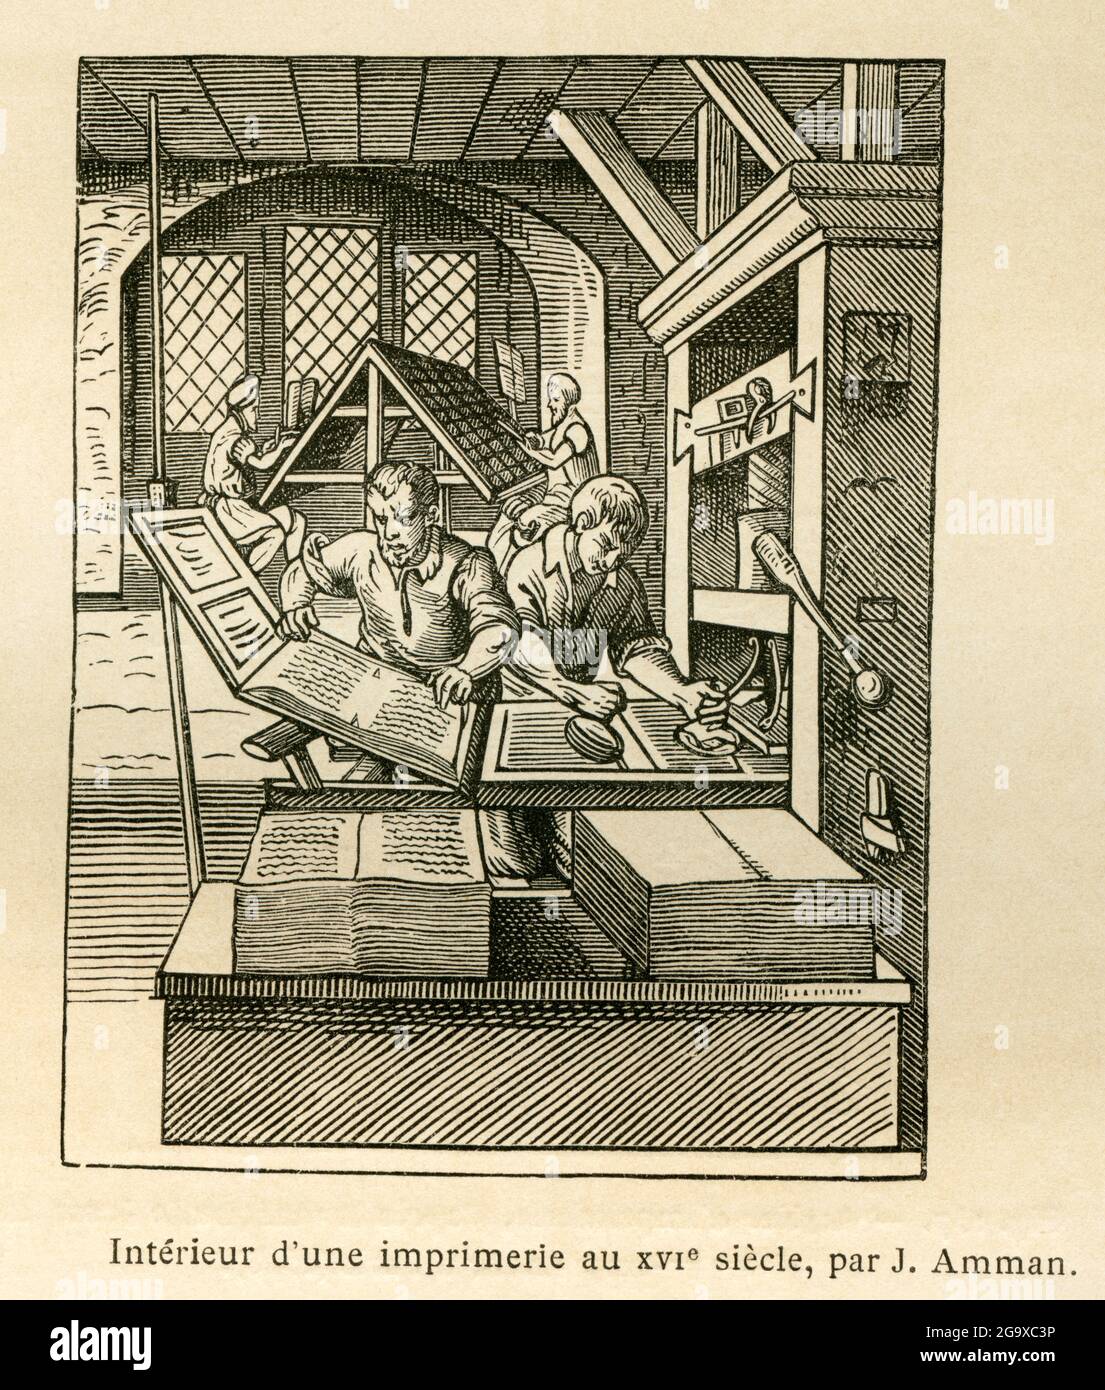 Europa, Deutschland, Bayern, Nürnberg, im Inneren einer Druckerei im 16. Jahrhundert, von J. Amman, ZUSÄTZLICHE-RIGHTS-CLEARANCE-INFO-NOT-AVAILABLE Stockfoto